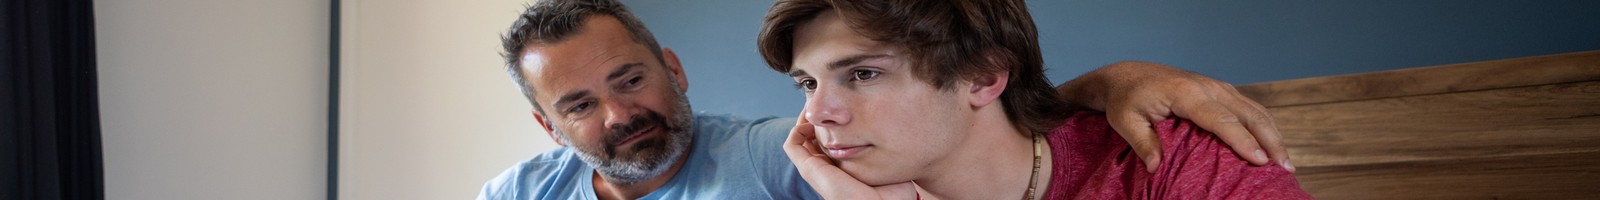 Santé mentale des jeunes : une hausse alarmante des pensées suicidaires et des tentatives de suicide